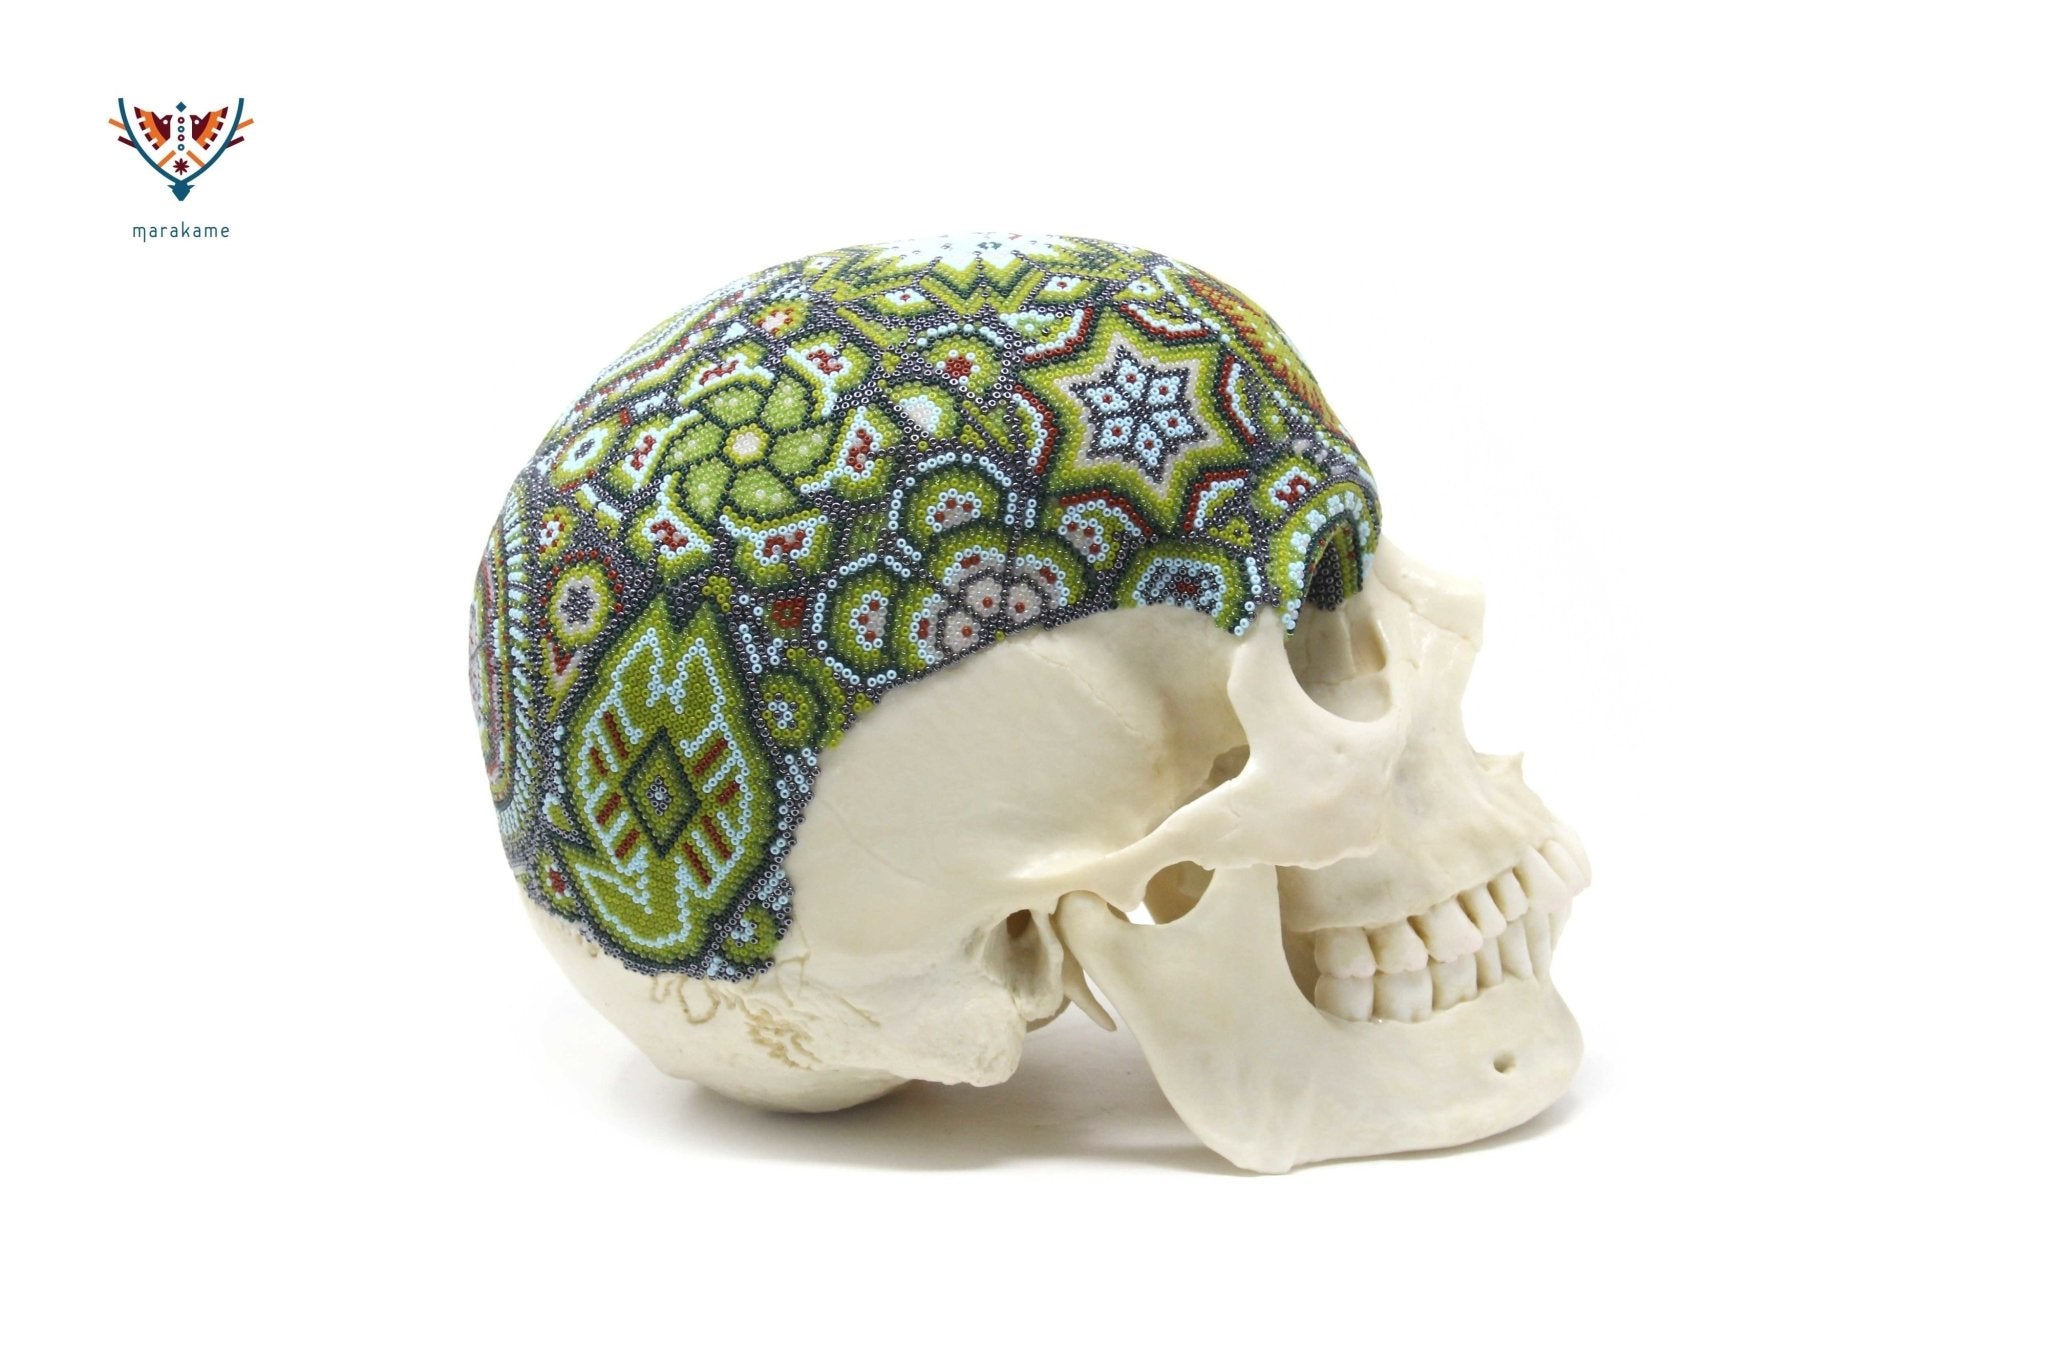 Cranio umano iperrealistico "Hauxamanaka" - Huichol Art - Marakame